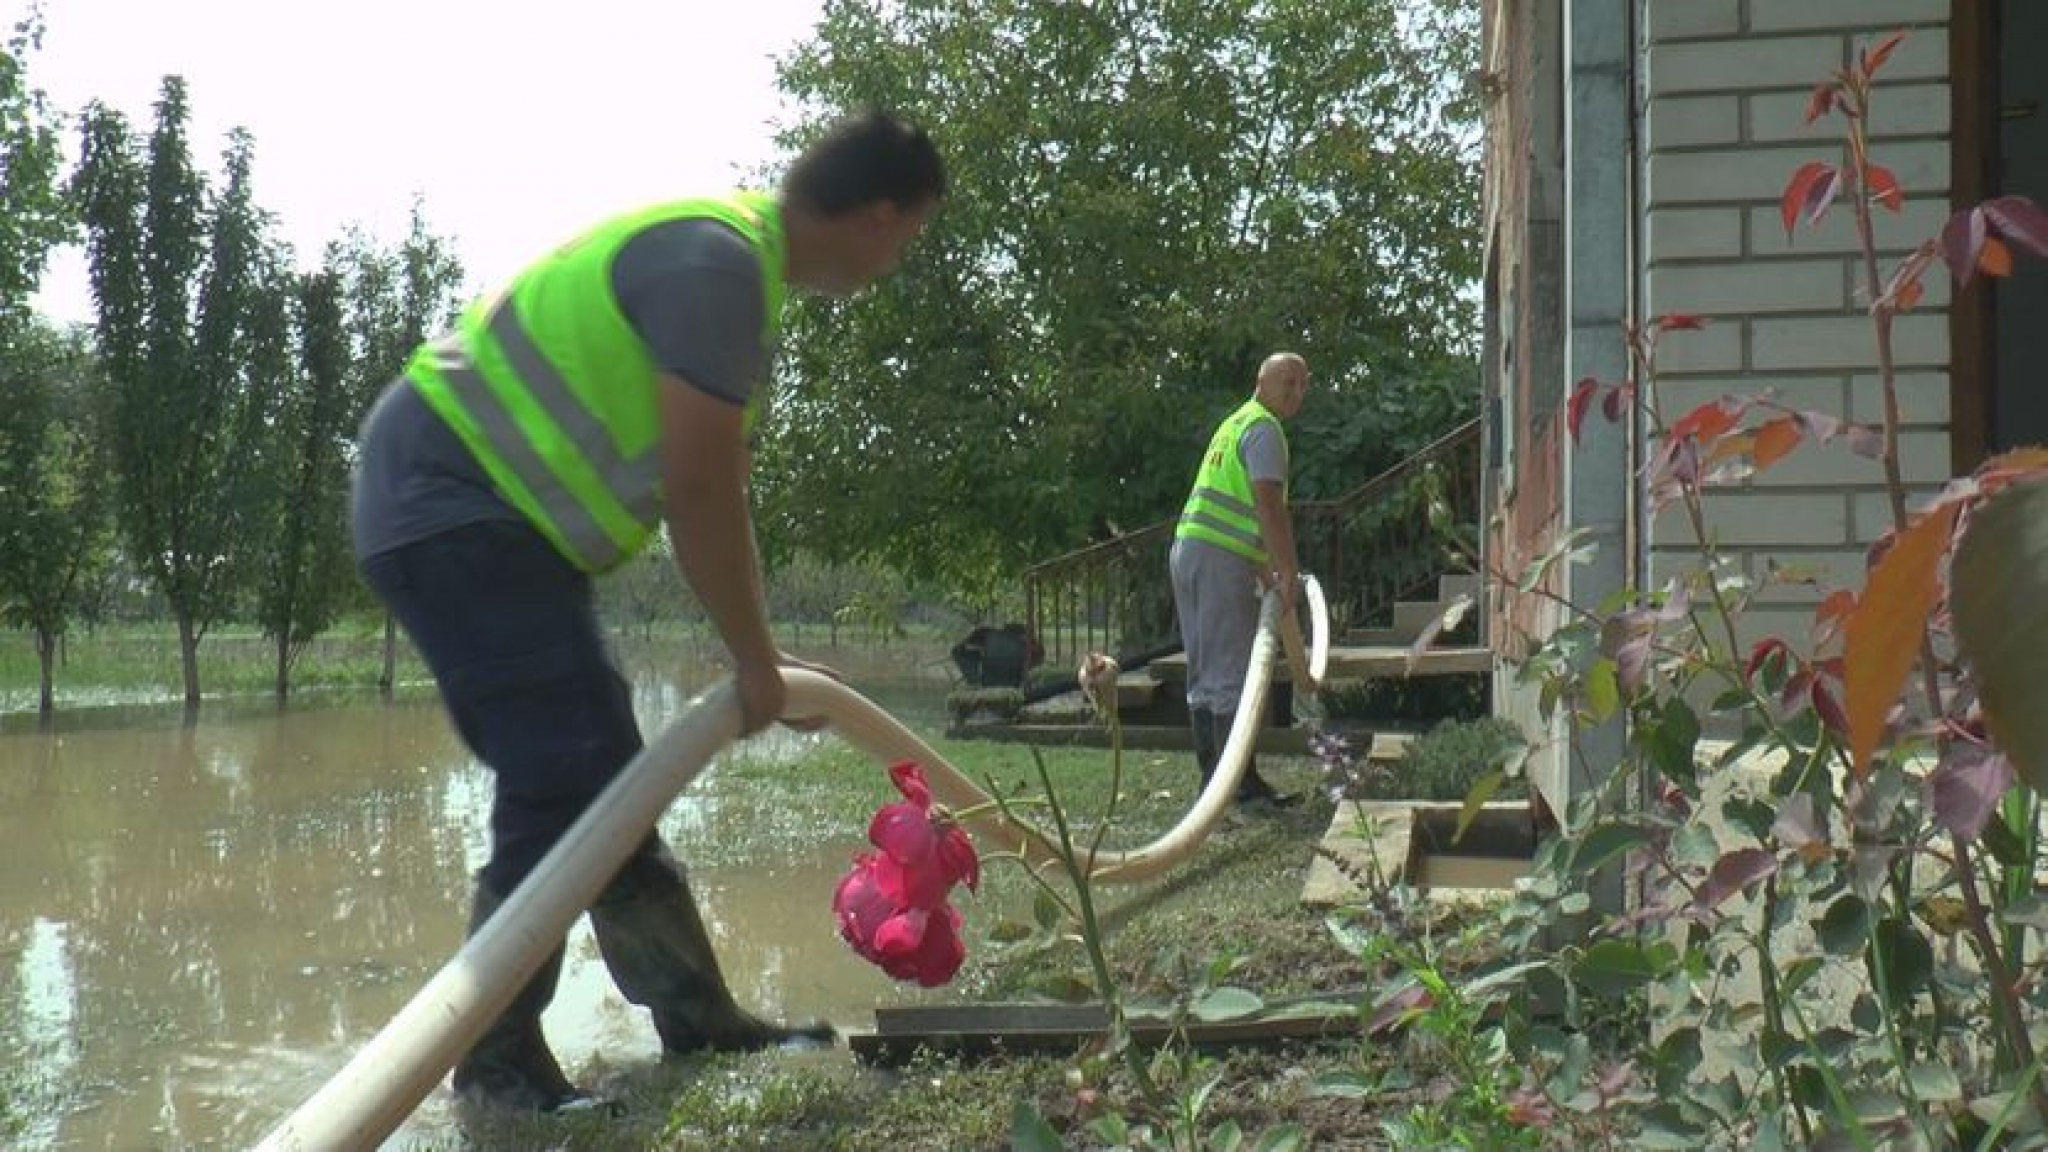 DVE KUĆE SU NAM POPLAVLJENE Meštani područja u Prijepolju izvlače vodu iz svojih domova (FOTO)